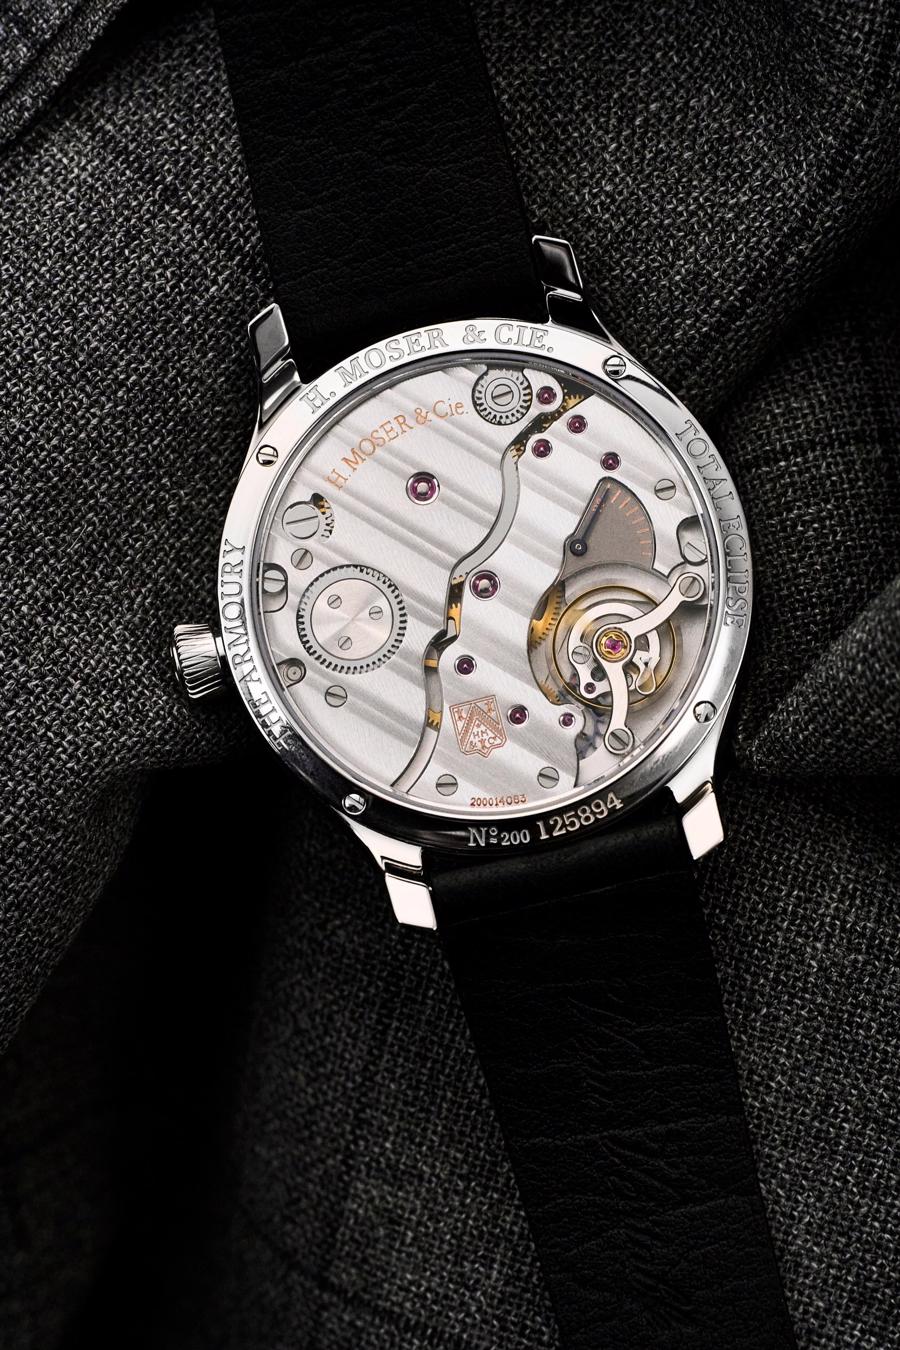 Cận cảnh mẫu đồng hồ “nhật thực toàn phần” chỉ có 28 chiếc của H.Moser & Cie - Ảnh 6